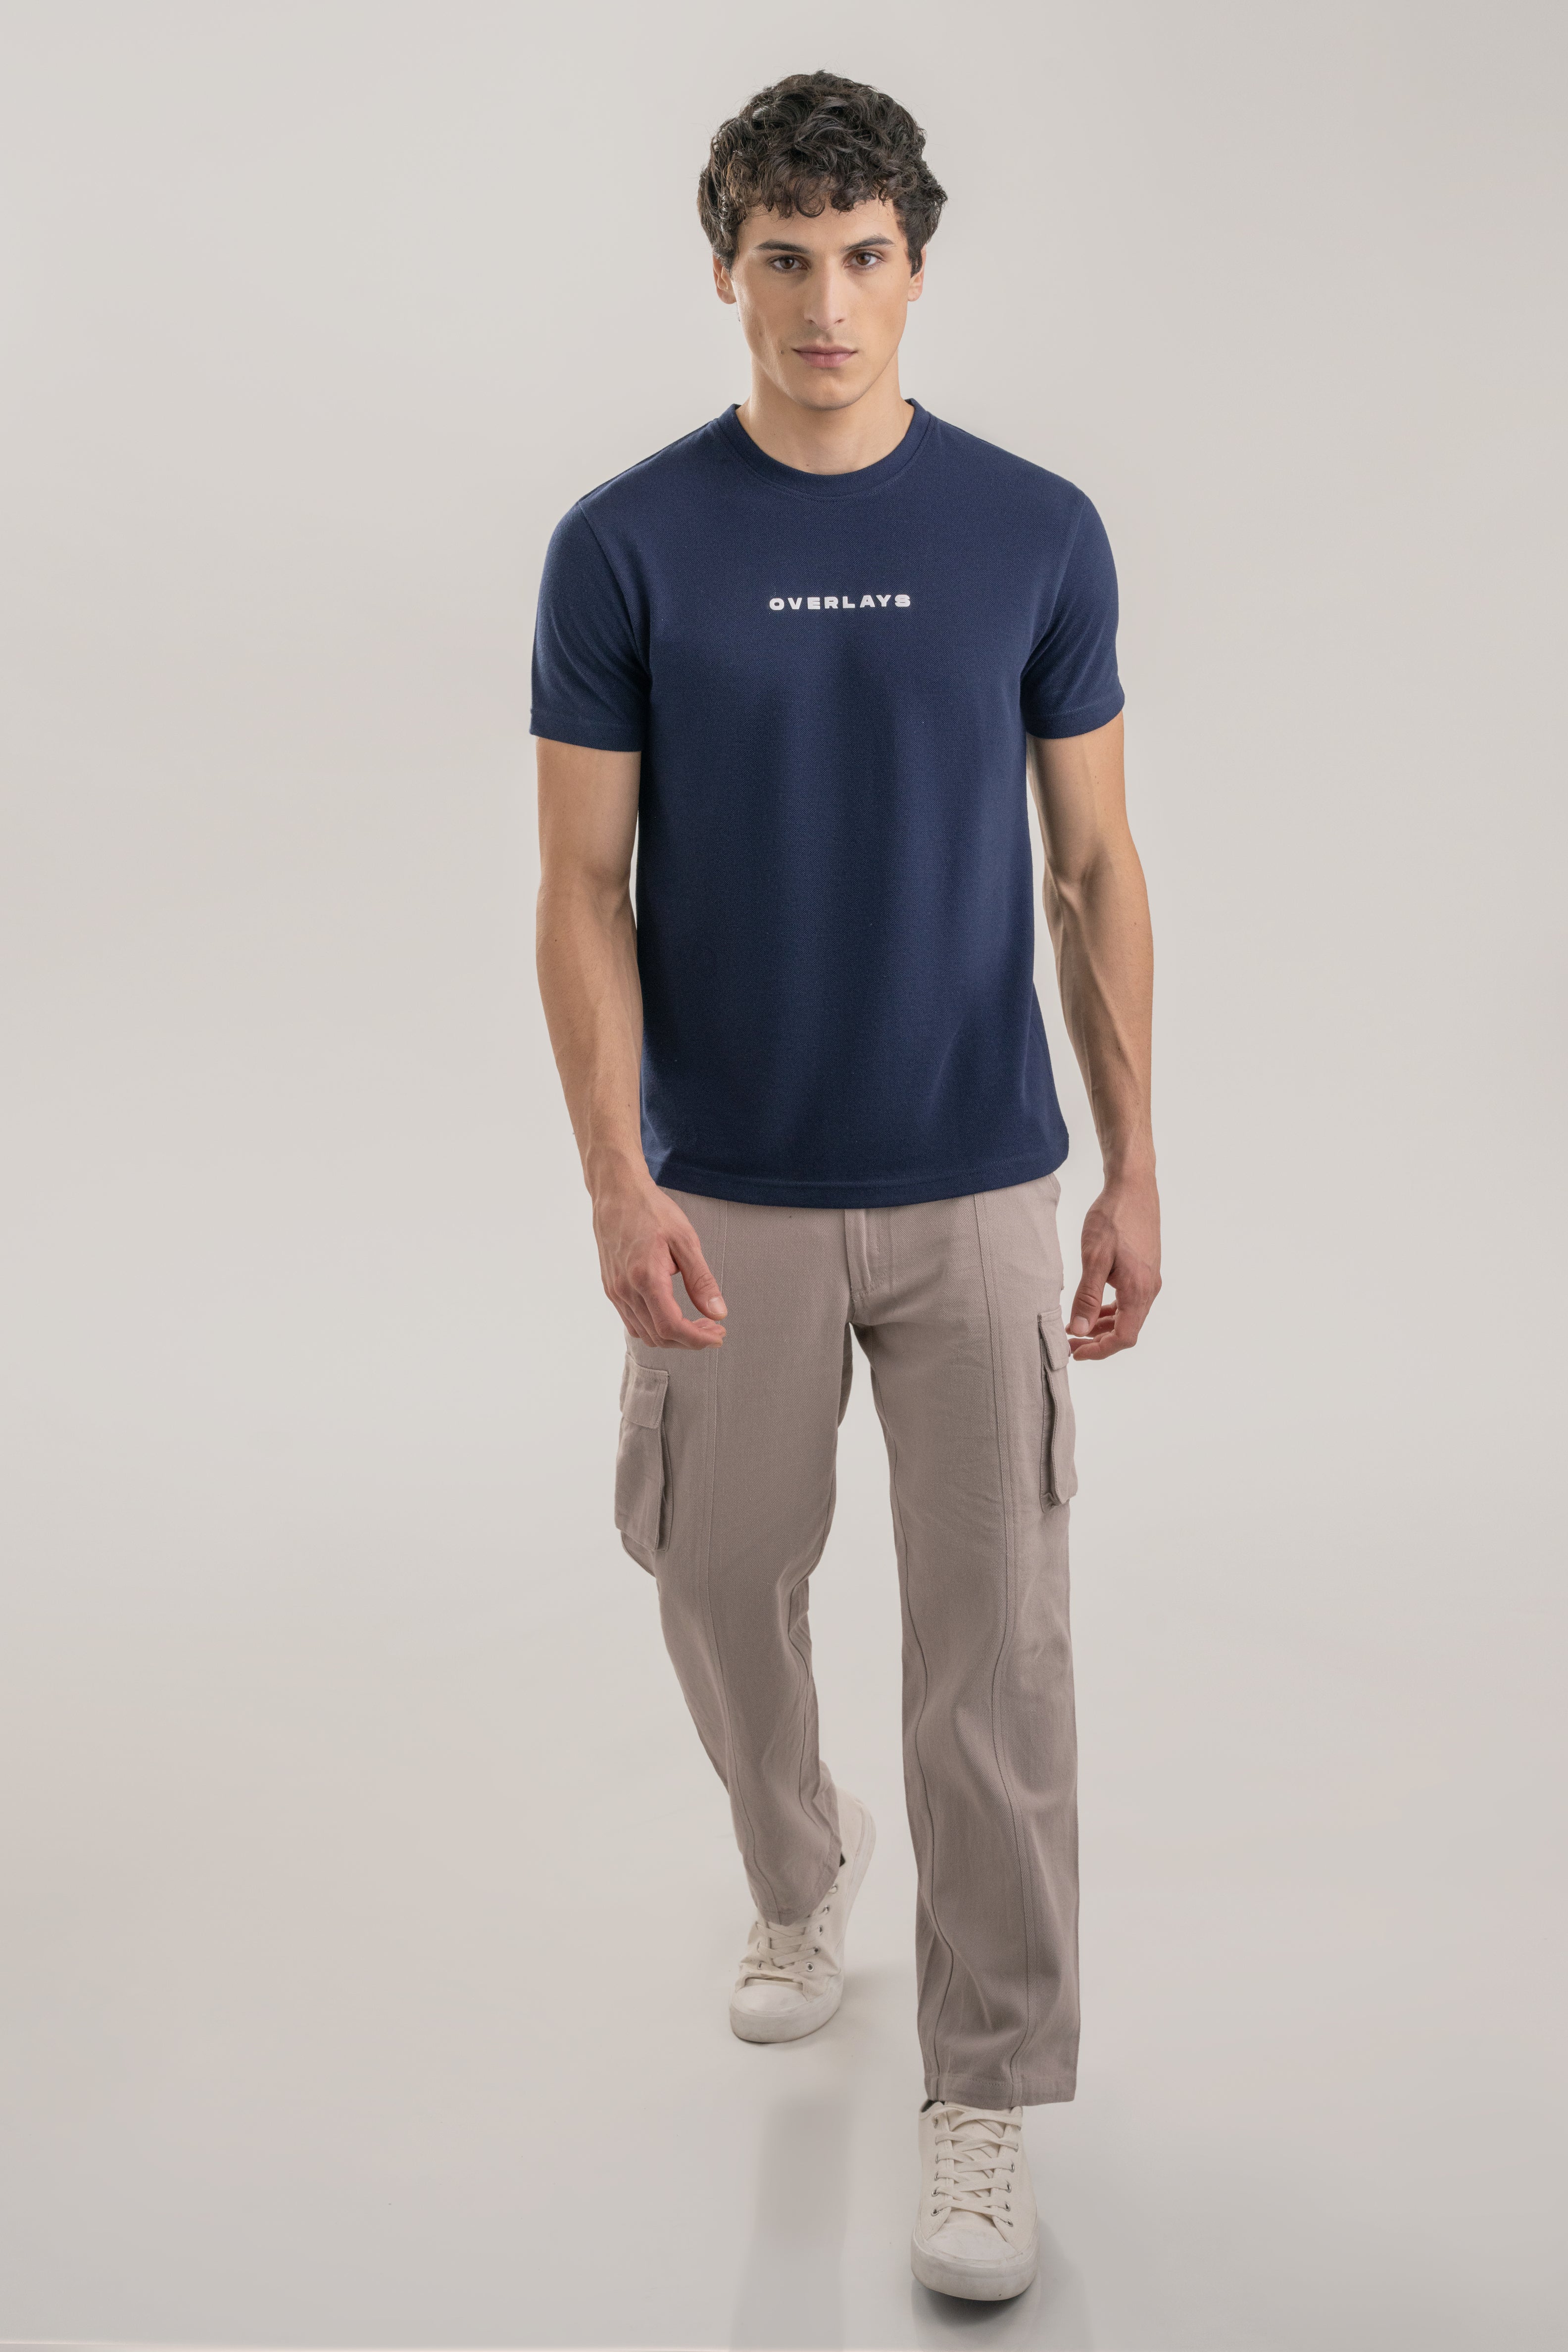 Textured Regular Fit Navy Blue Pique T-shirt